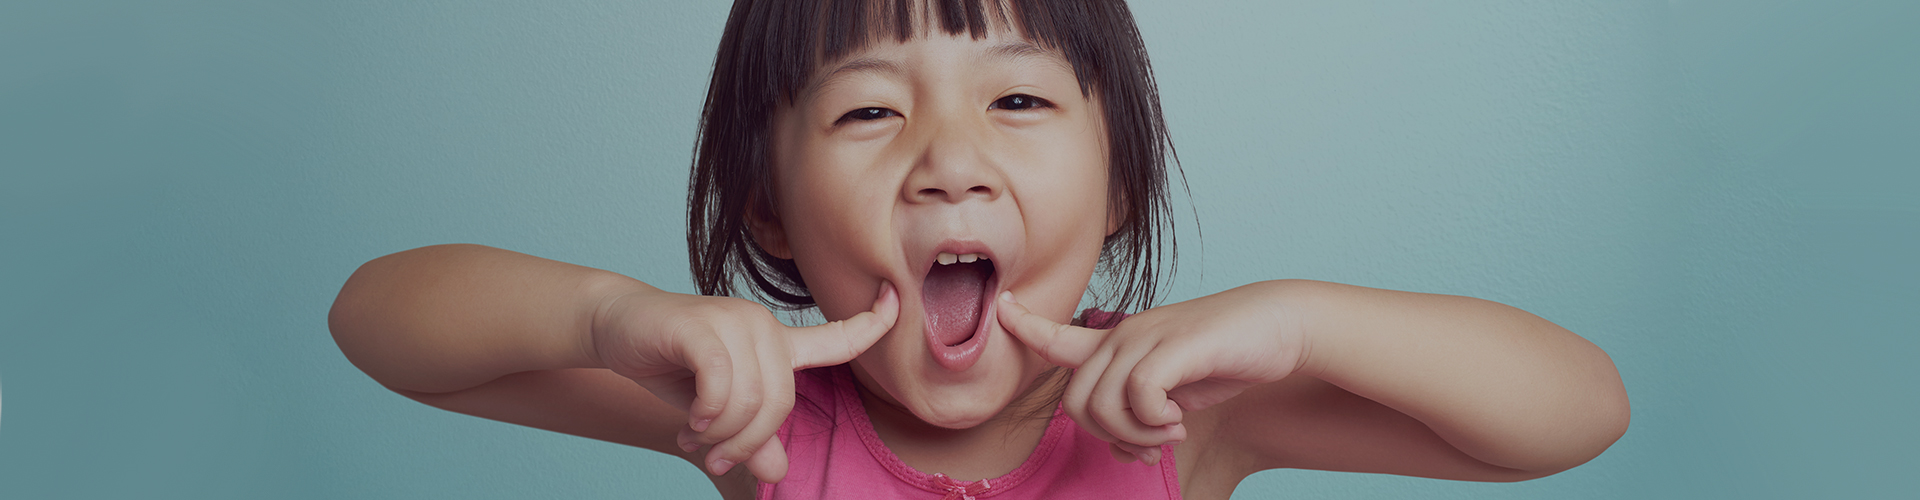 Cavities in Baby Teeth Kid Pointing To Teeth